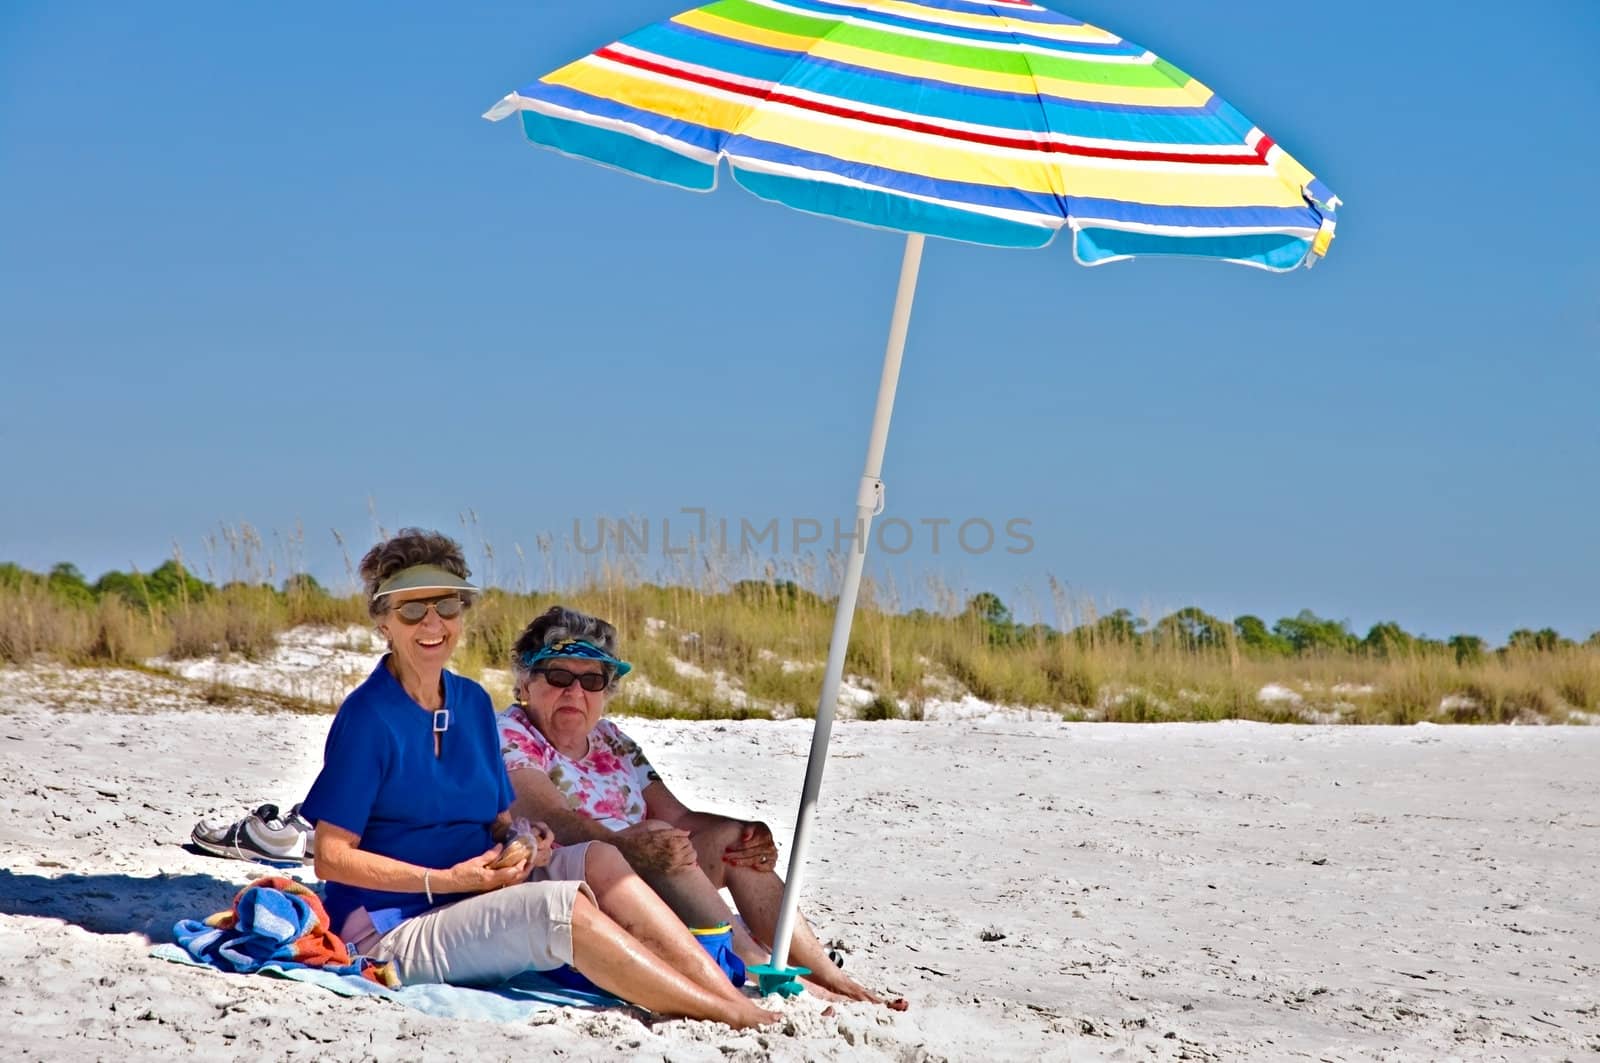 Two elderly women sitting under an umbrella at the beach.